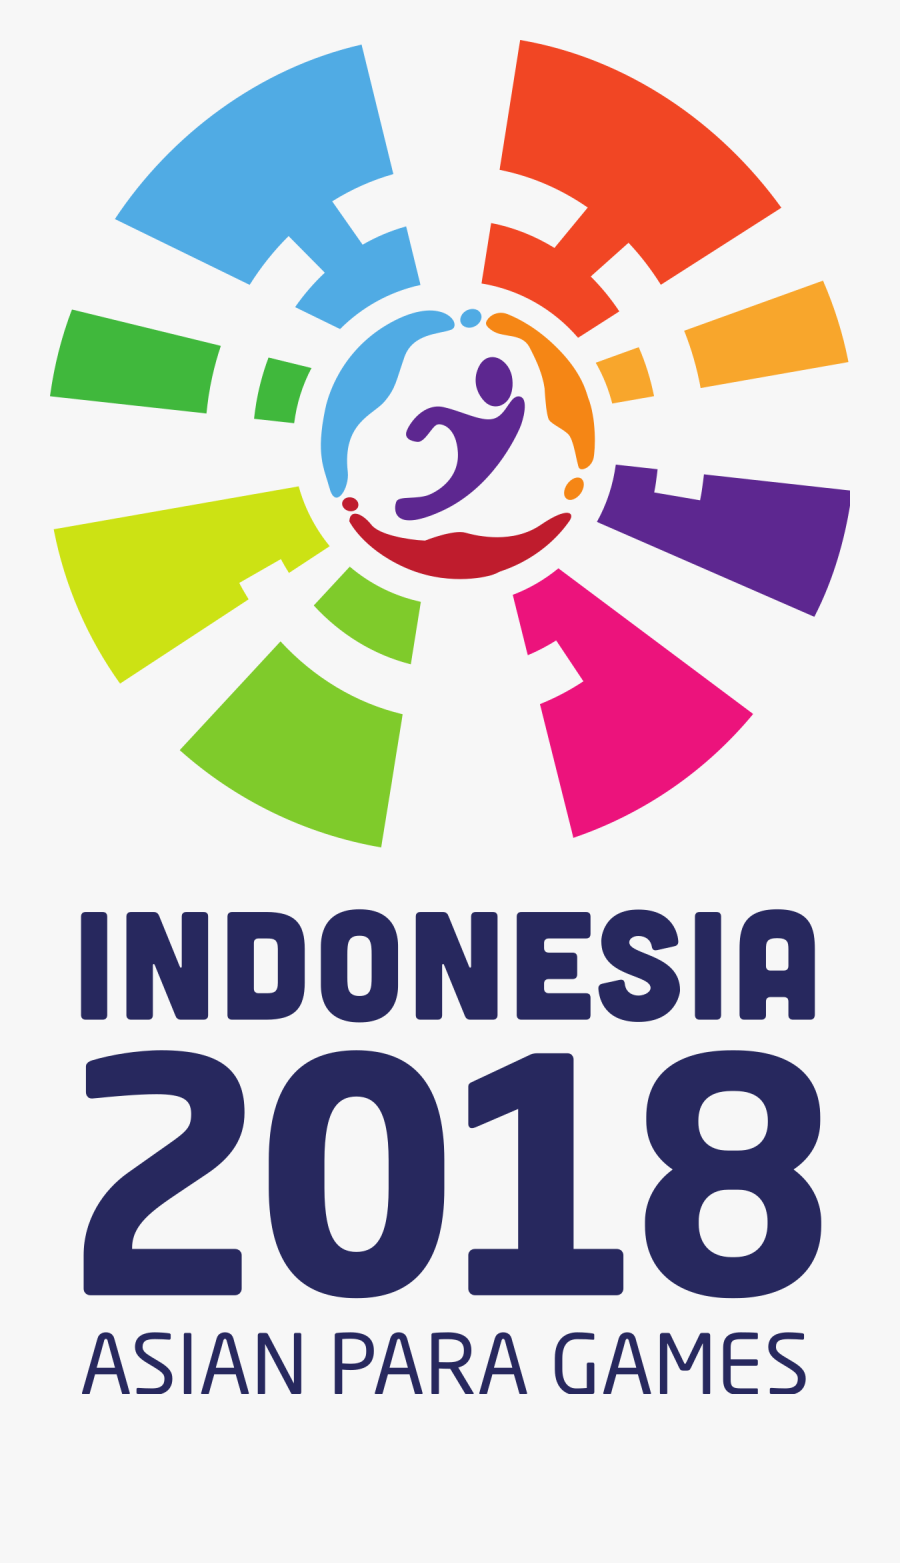 Asian Para Games - Indonesia 2018 Asian Para Games, Transparent Clipart